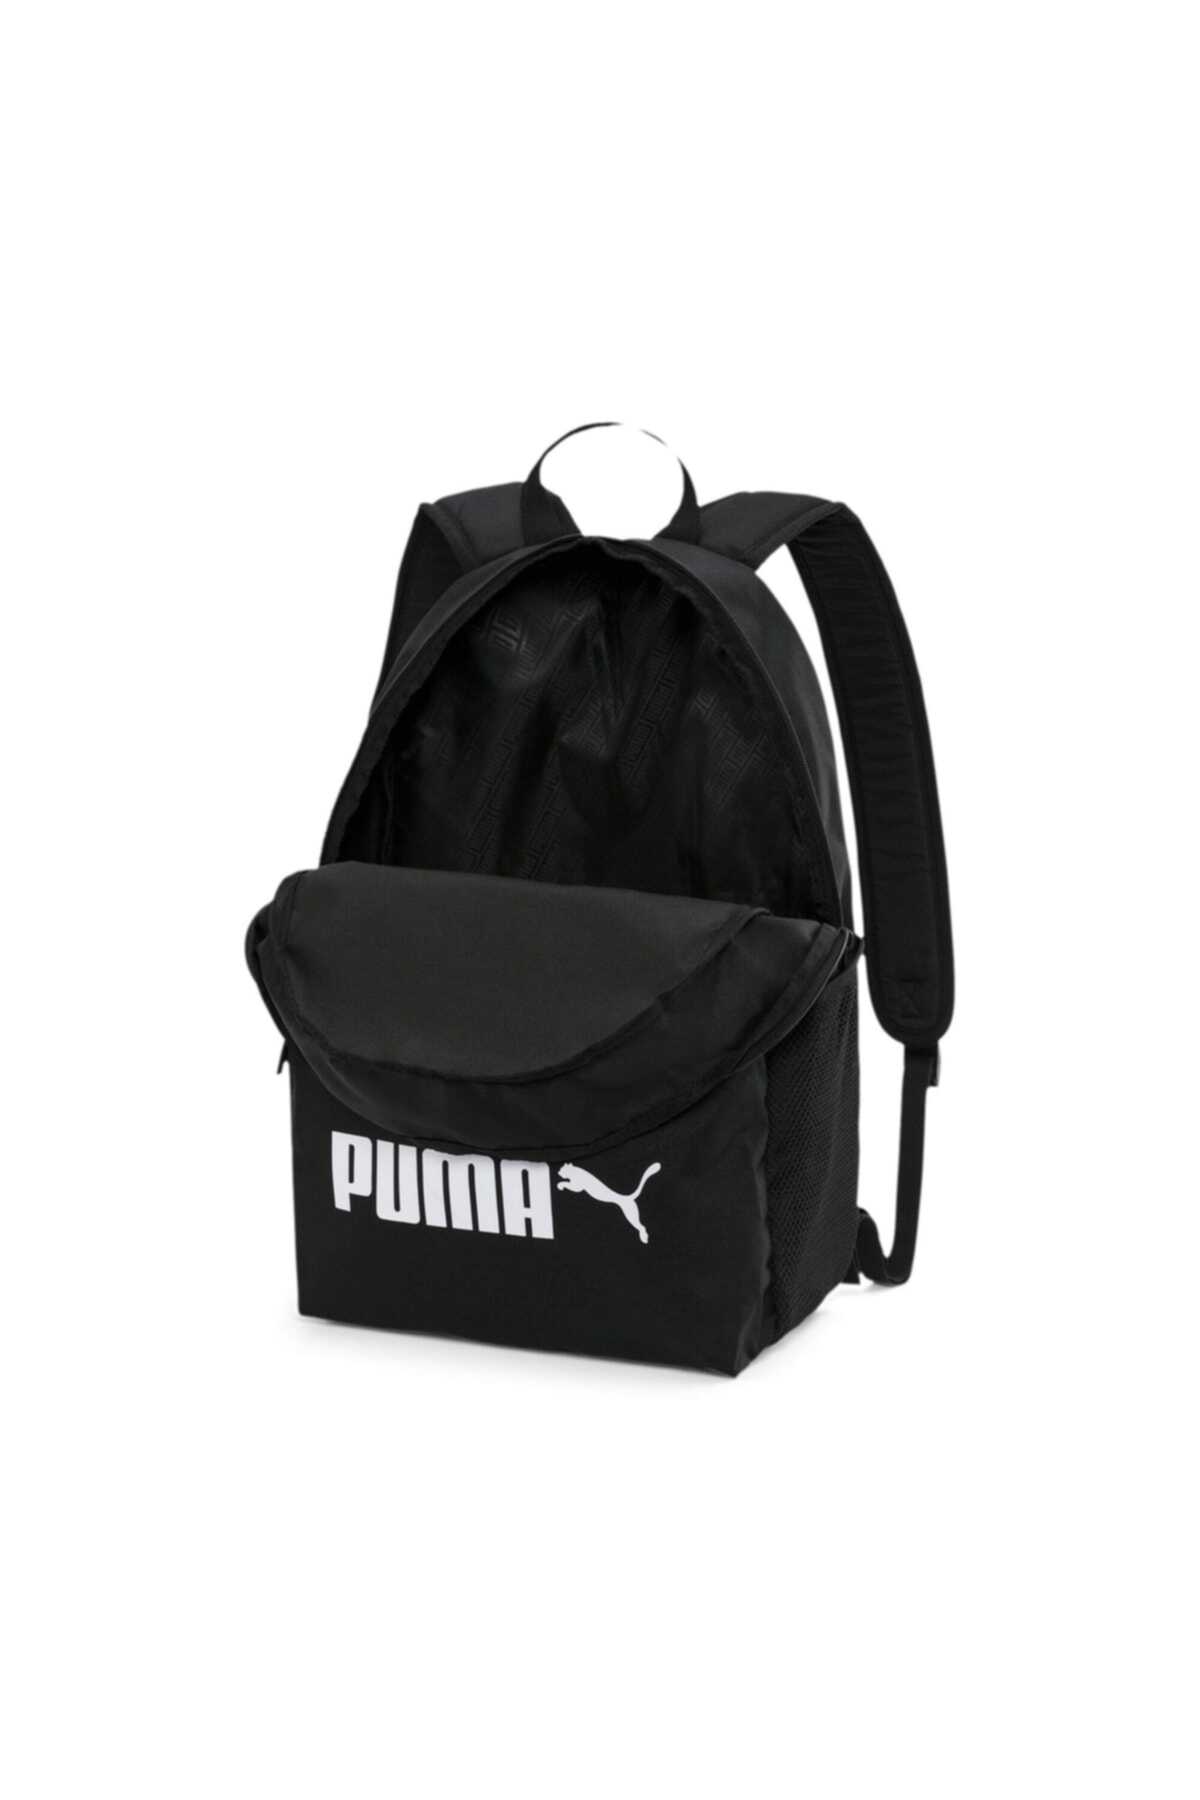 کوله پشتی چاپ دار یونیسکس مشکی برند Puma 